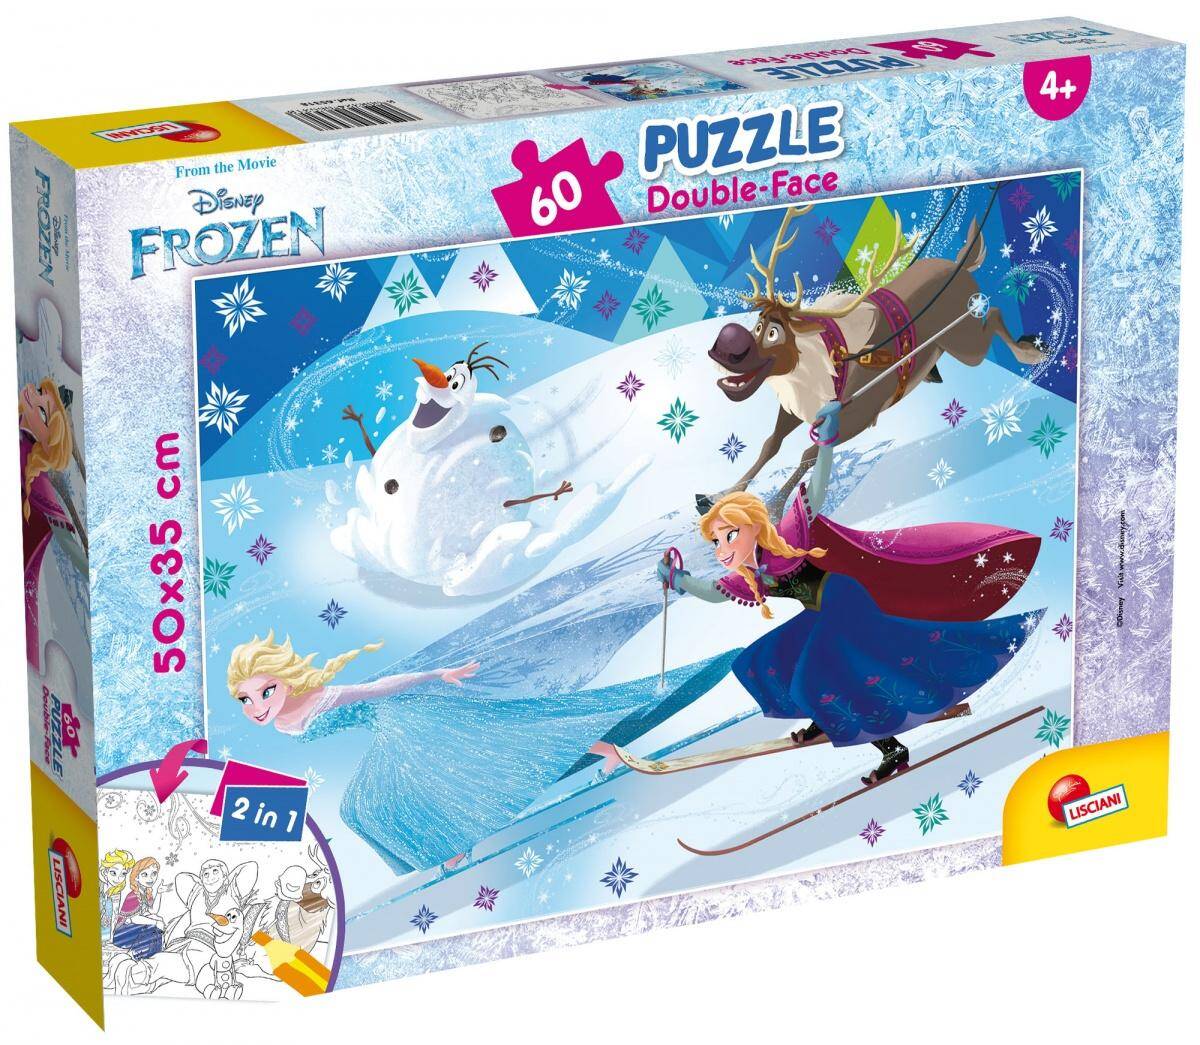 Puzzle 60 plus double-face Frozen 304-65318